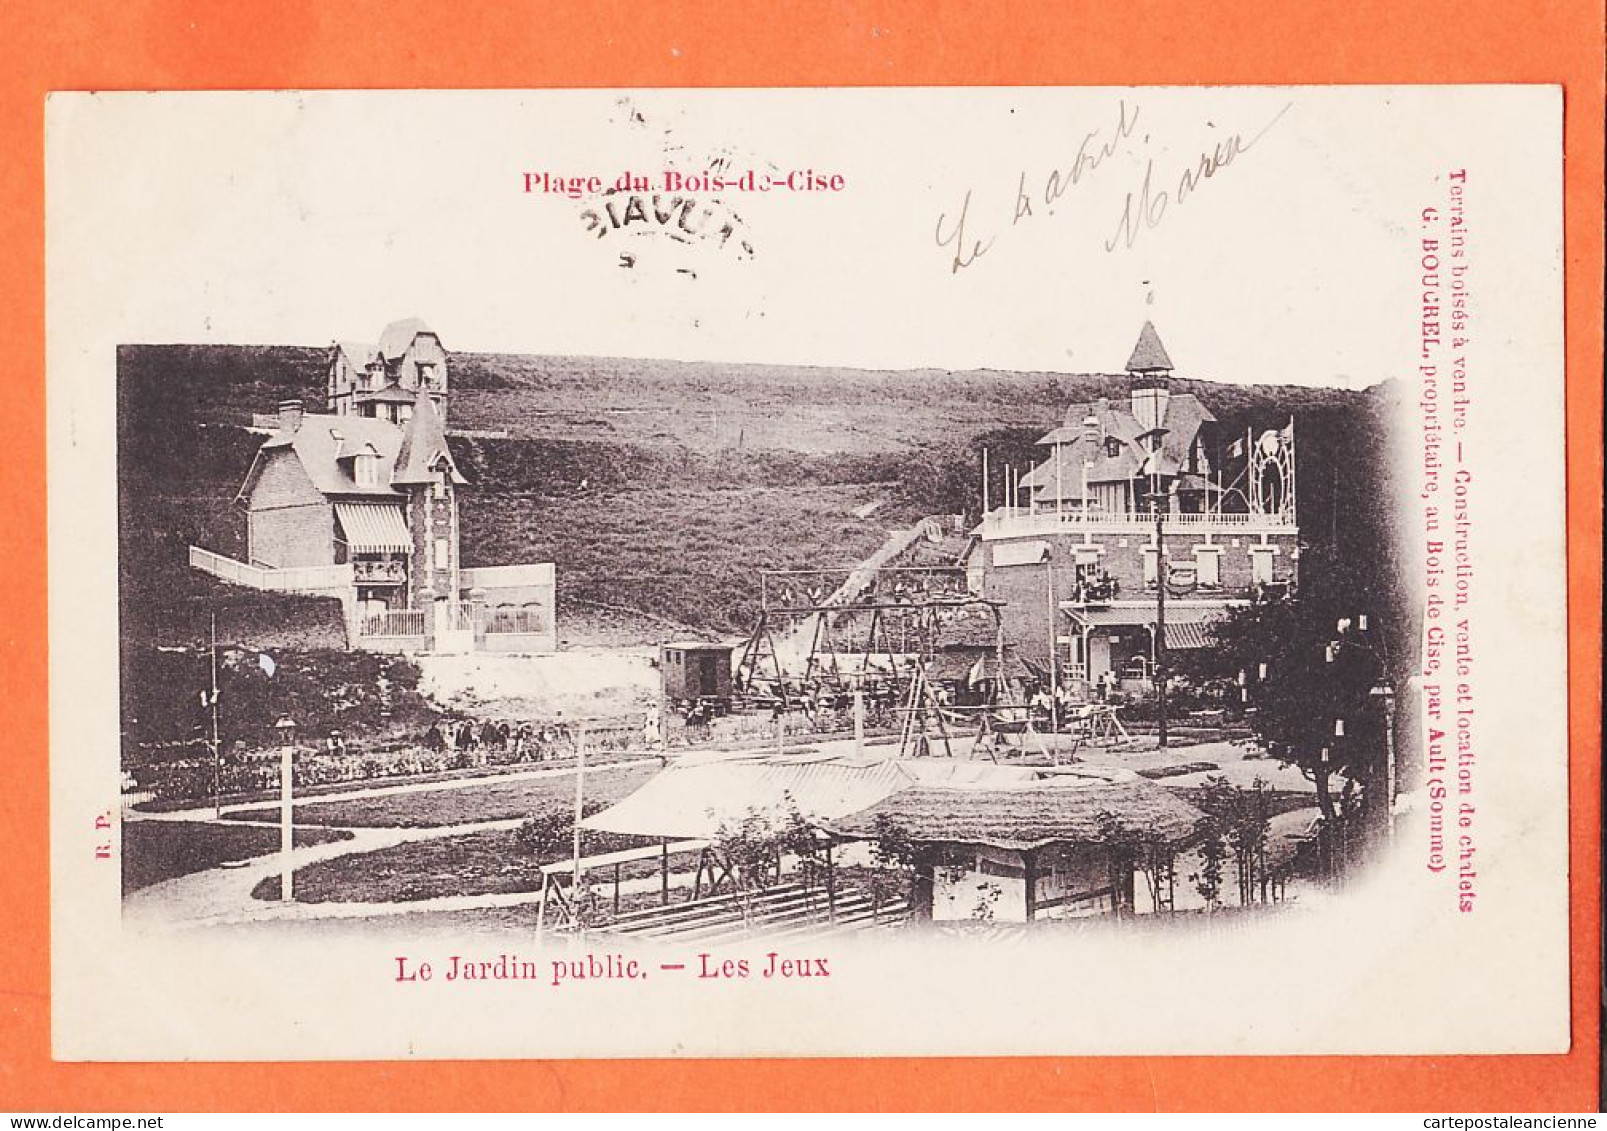 28006 / Rare BOIS-de-CISE 80-Somme Plage Jeux Jardin Public Pub BOUCREL Propriétaire 1903 à MAILLE Menuisier Beauvais  - Bois-de-Cise